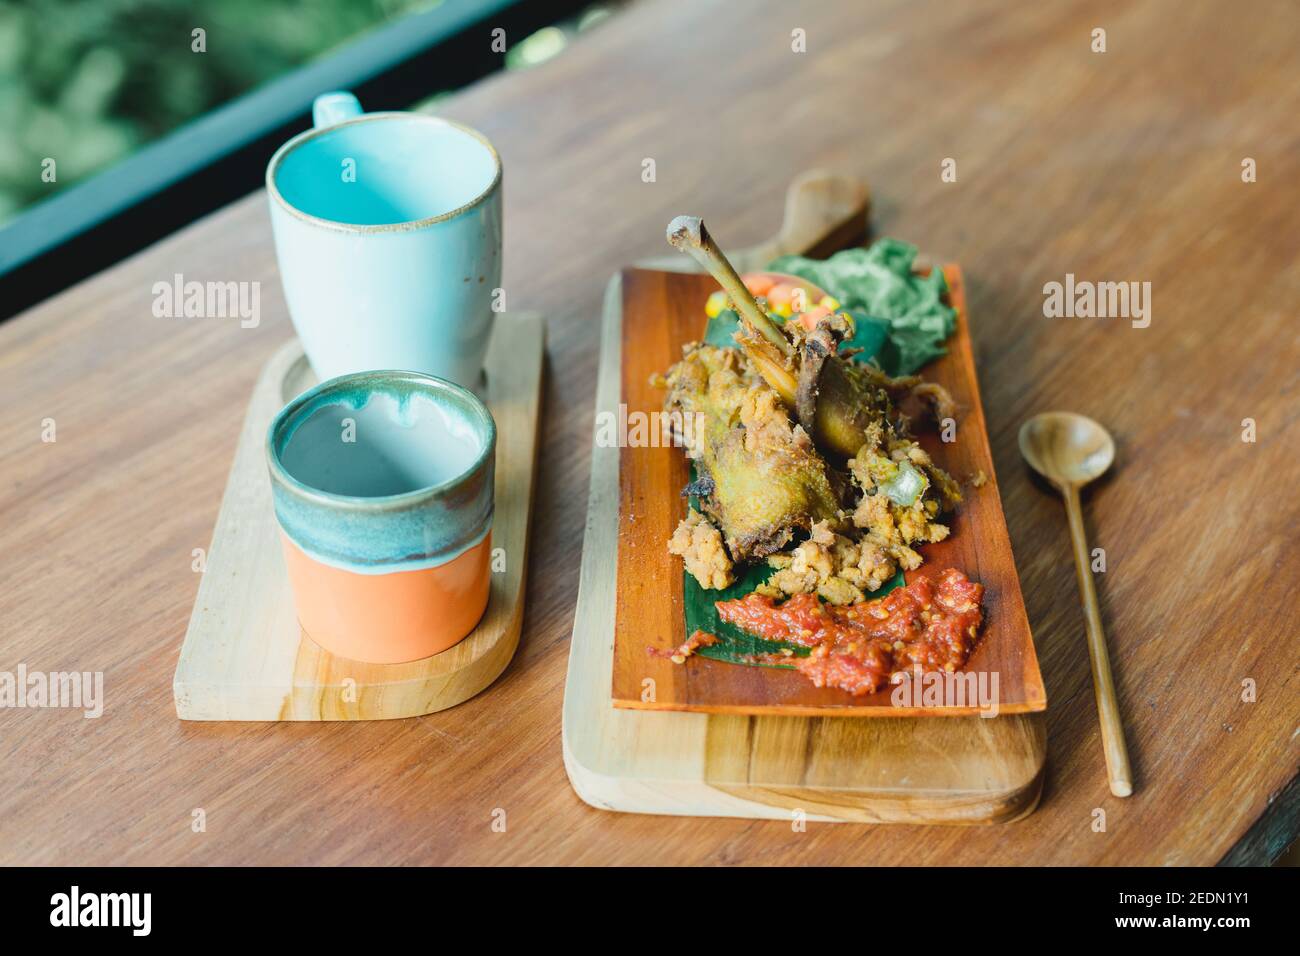 Ayam goreng kremes indonesio o pollo frito tradicional Foto de stock